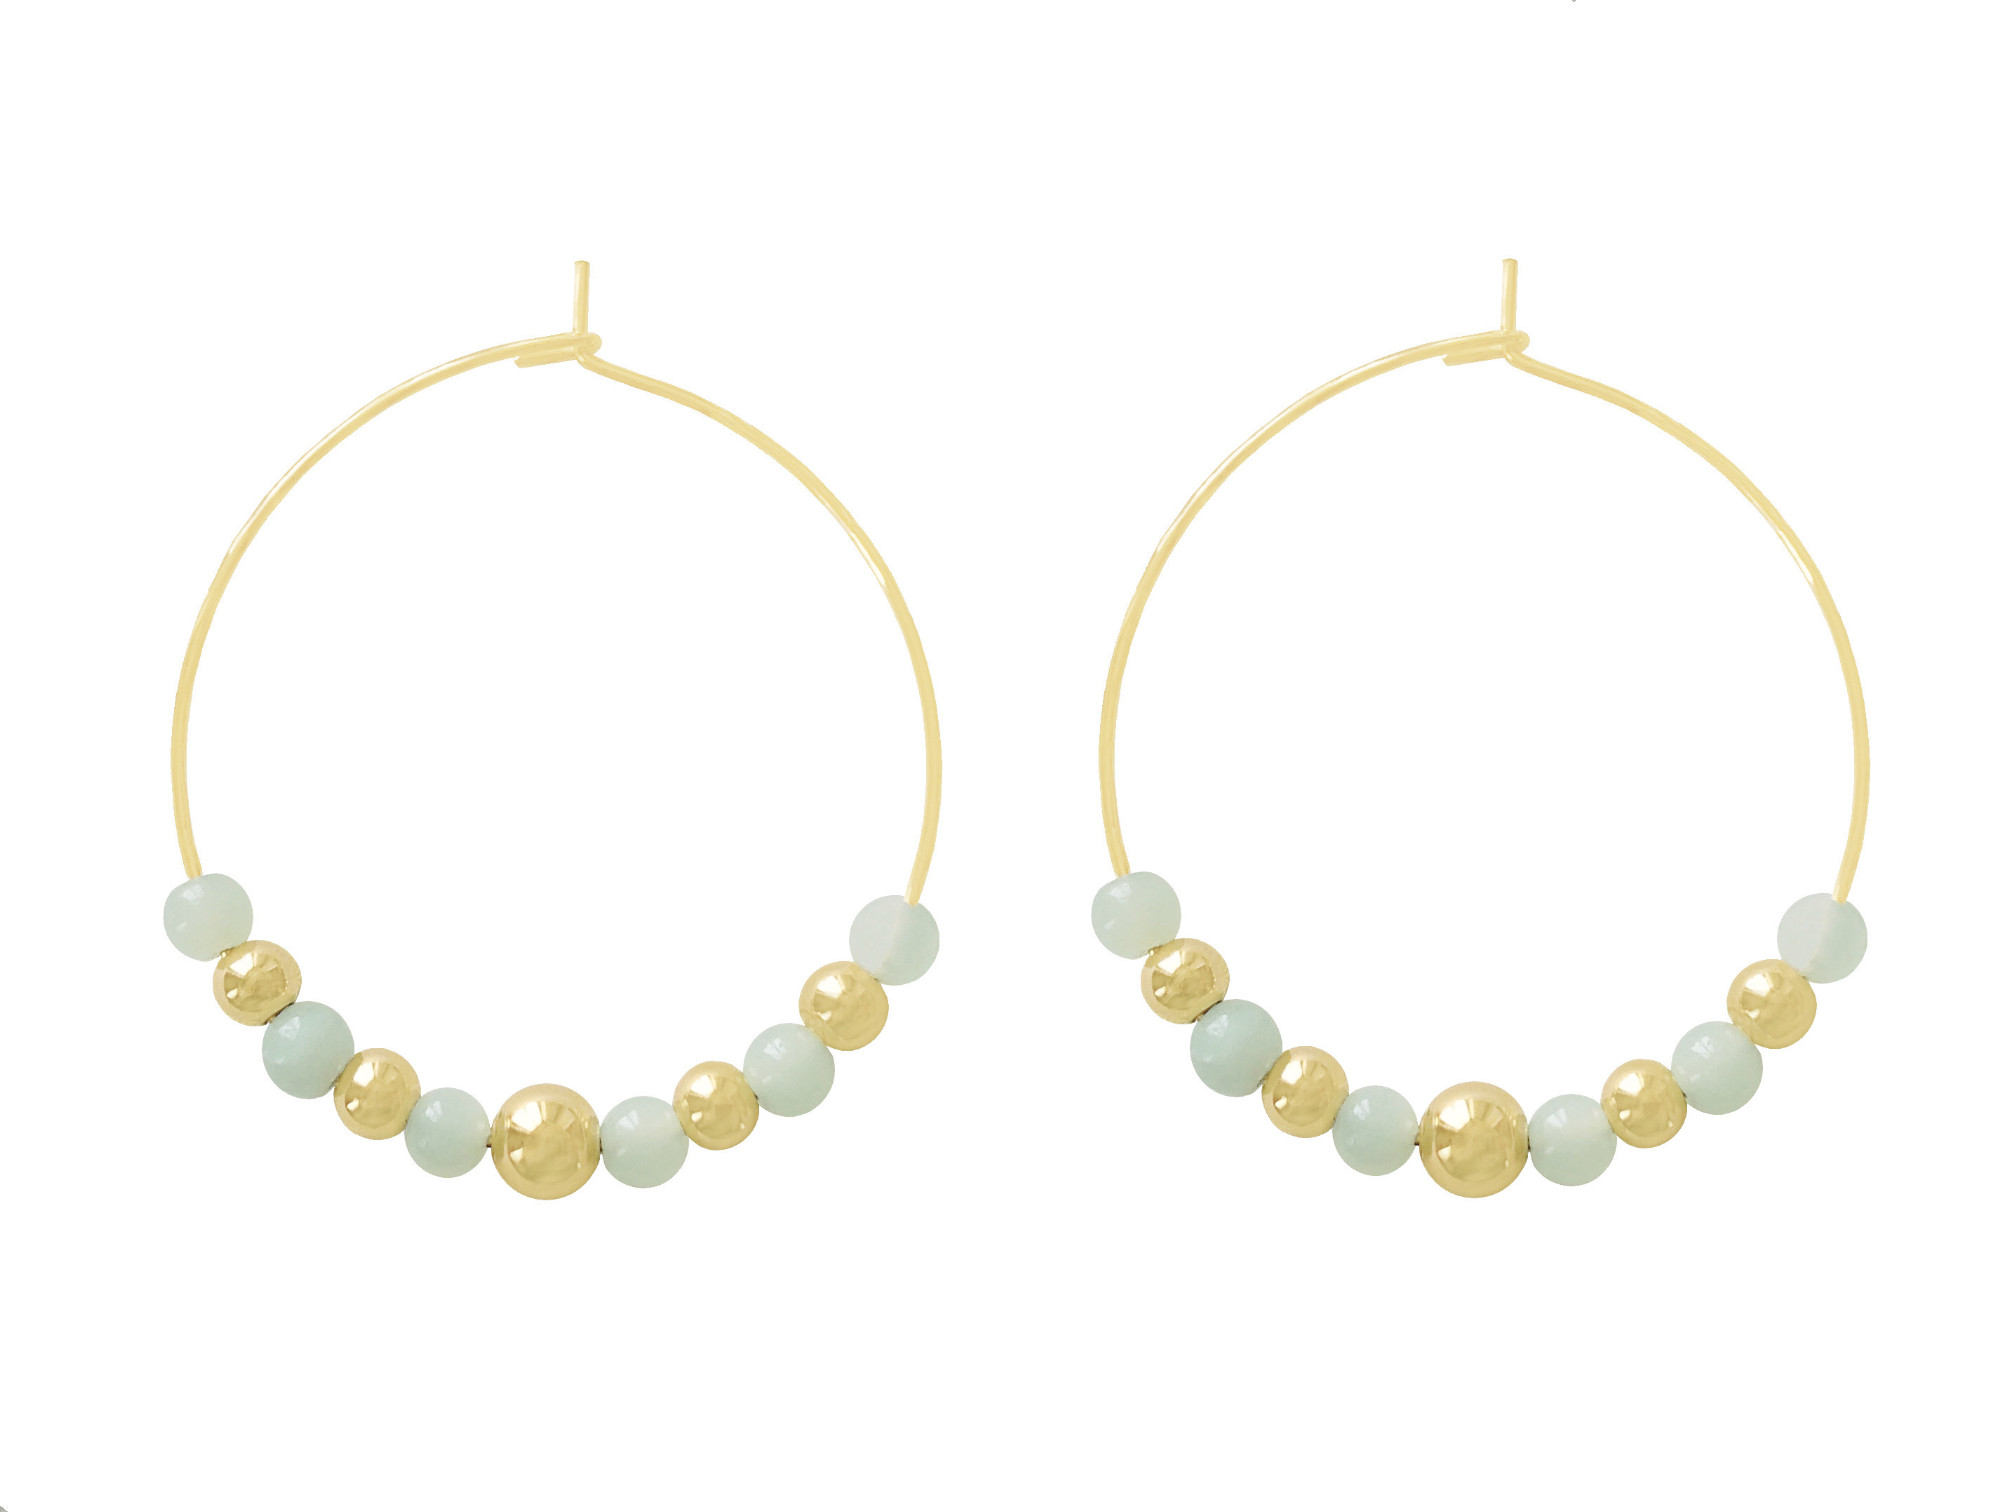 Boucles doreilles NIZAM grandes créoles dorées or perles naturelles amazonite couleur verte minimaliste